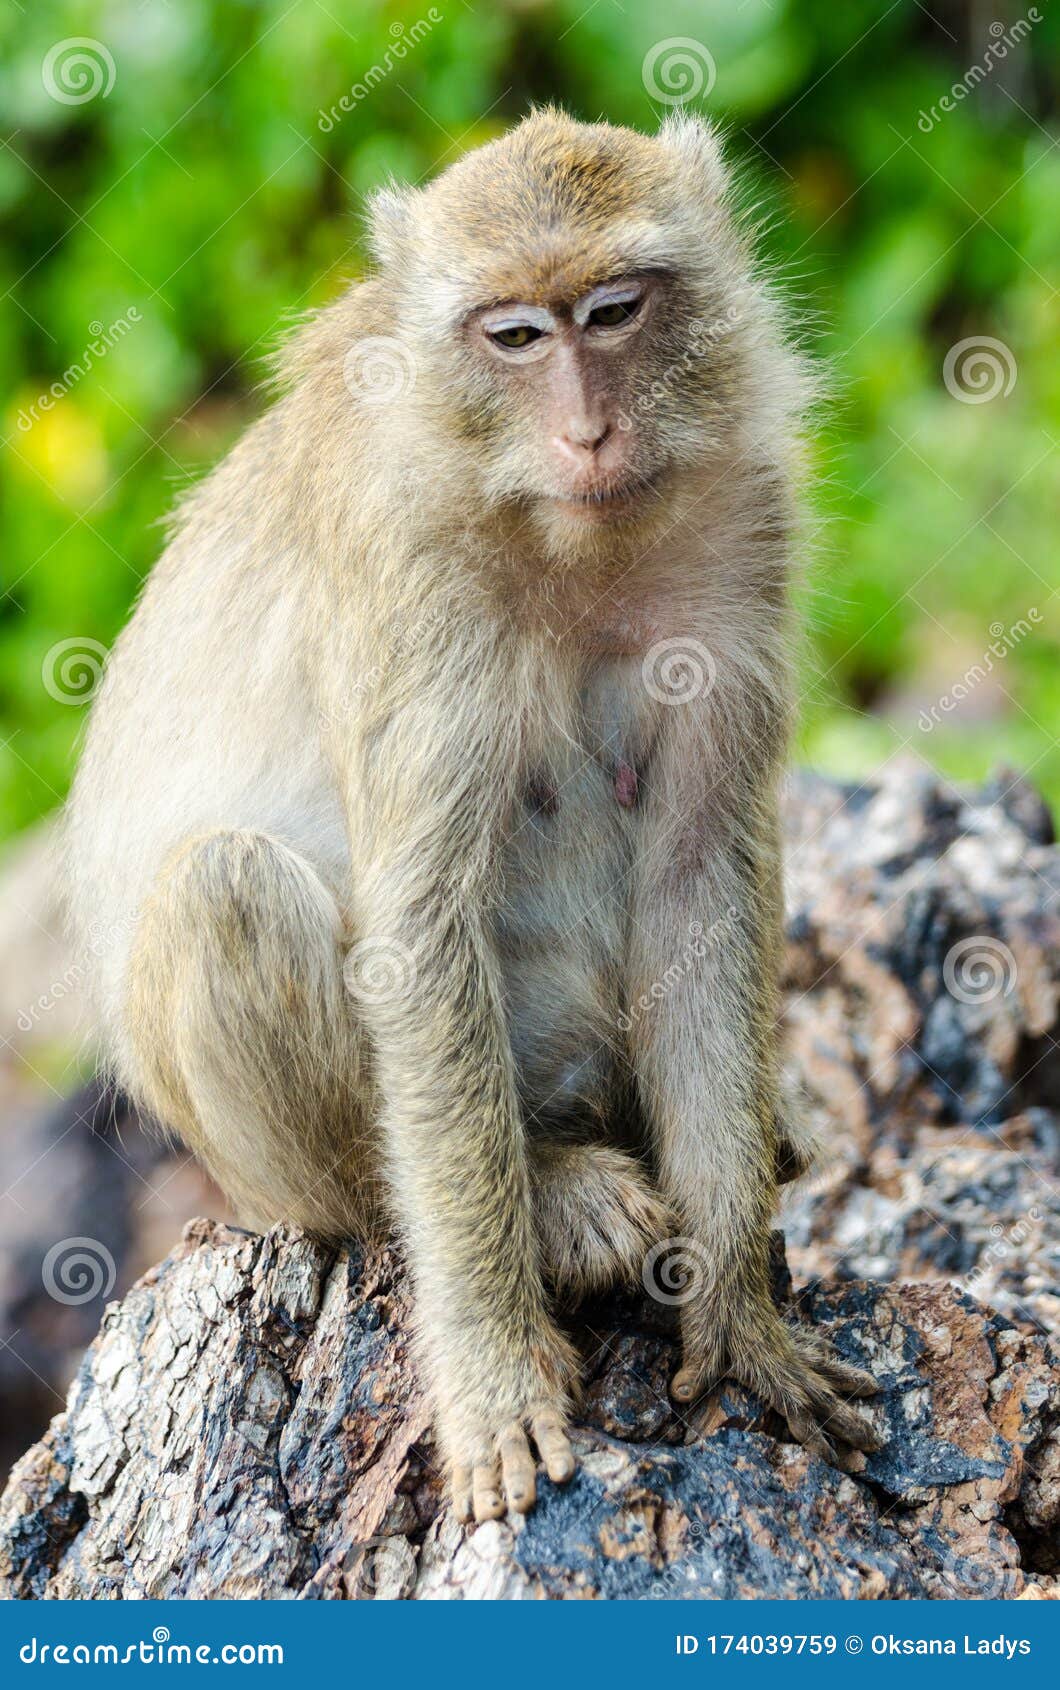 Funny Monkey in Thailand on Monkey Island Stock Image - Image of ...